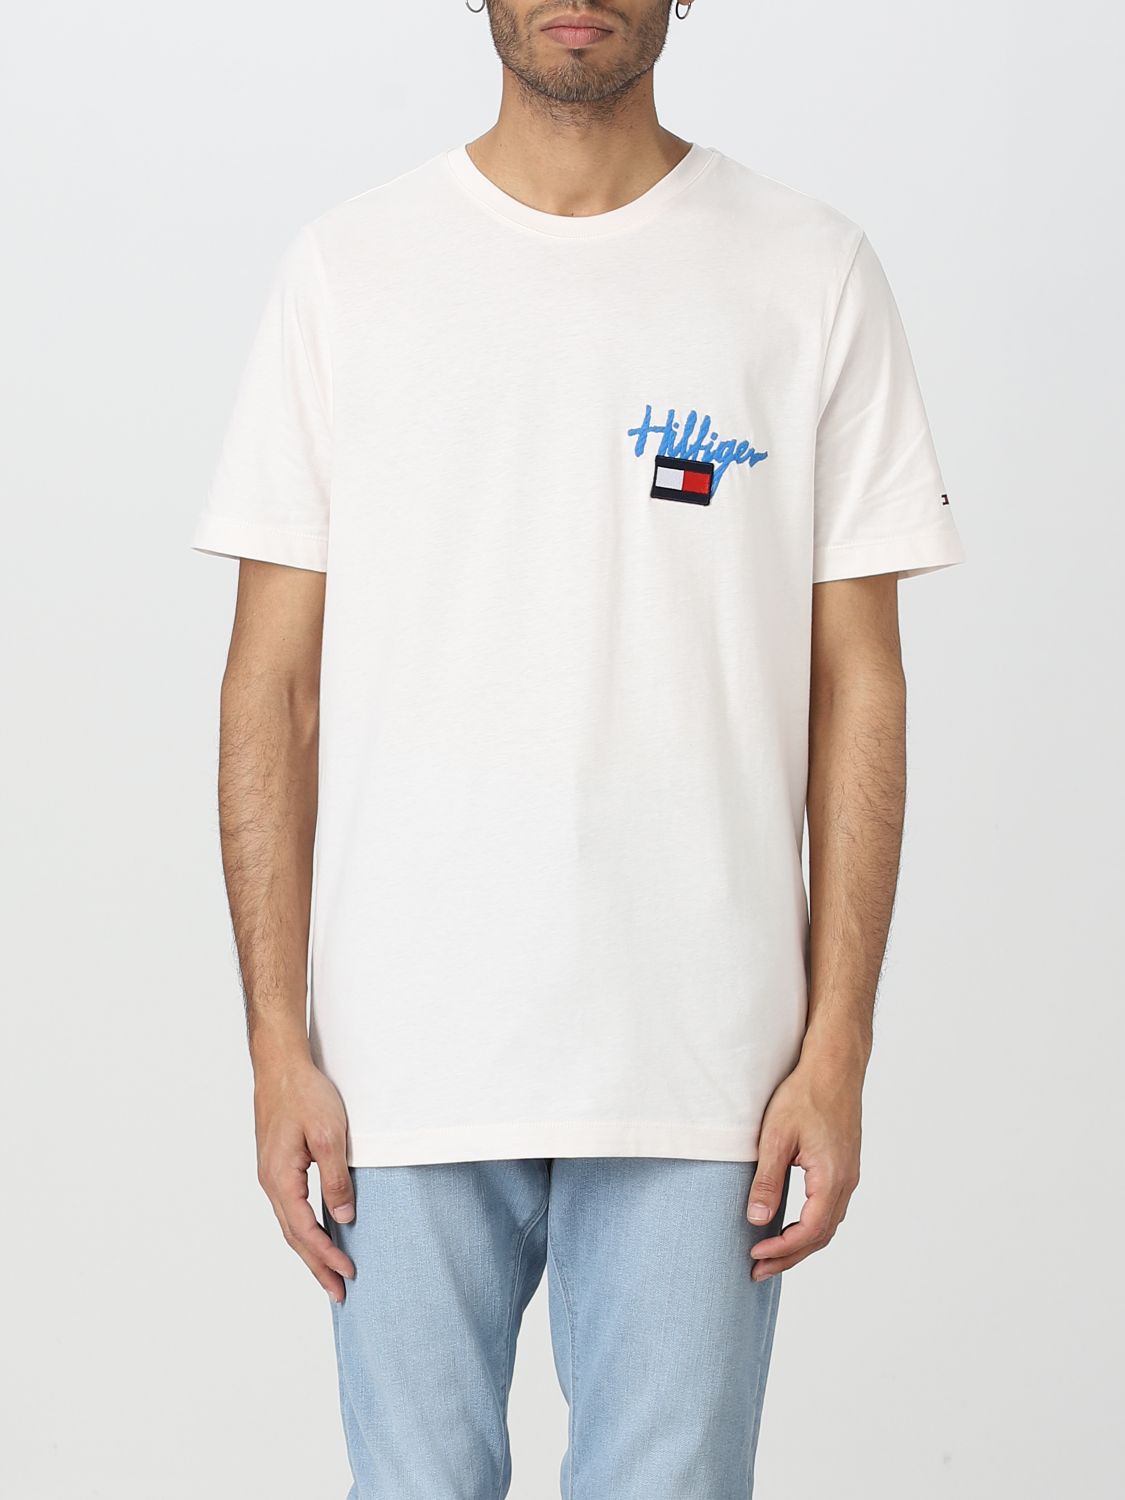 Systematisch Onderling verbinden Guggenheim Museum TOMMY HILFIGER: t-shirt for man - White | Tommy Hilfiger t-shirt MW0MW31266  online on GIGLIO.COM